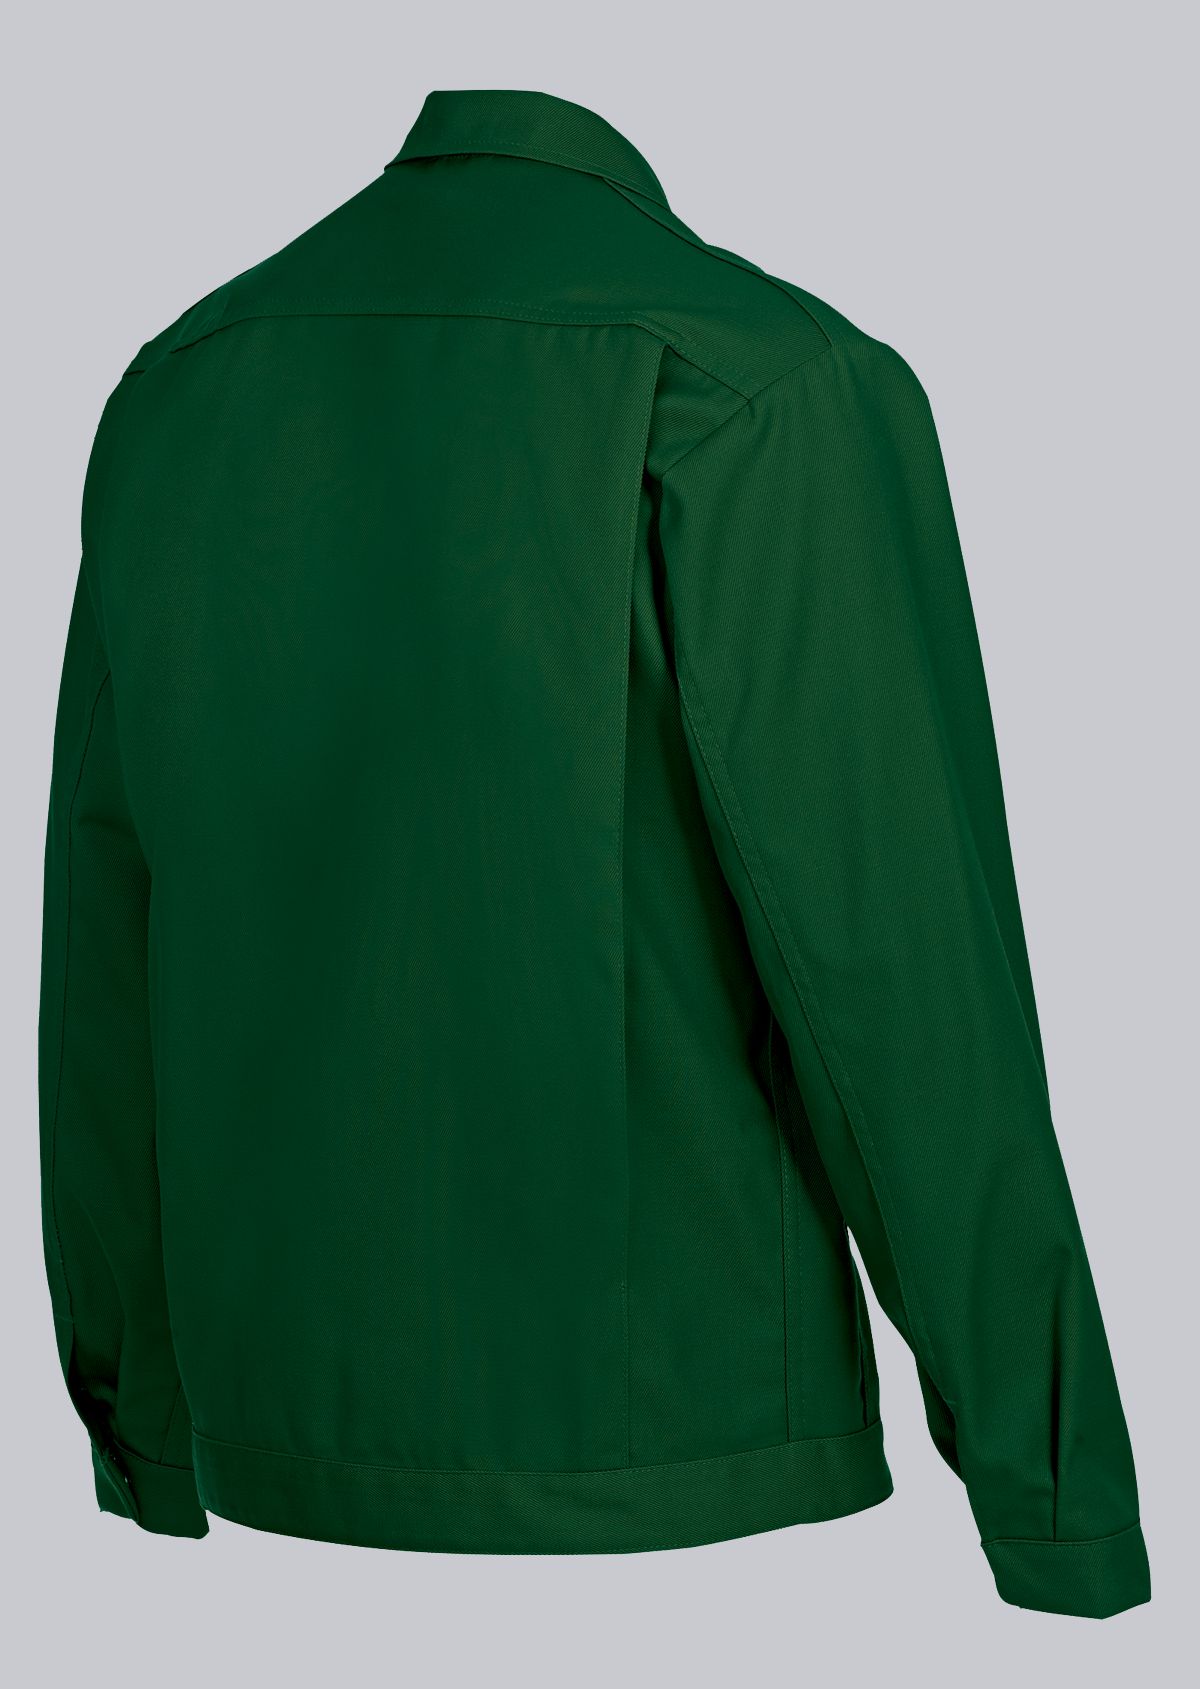 BP® Comfort work jacket